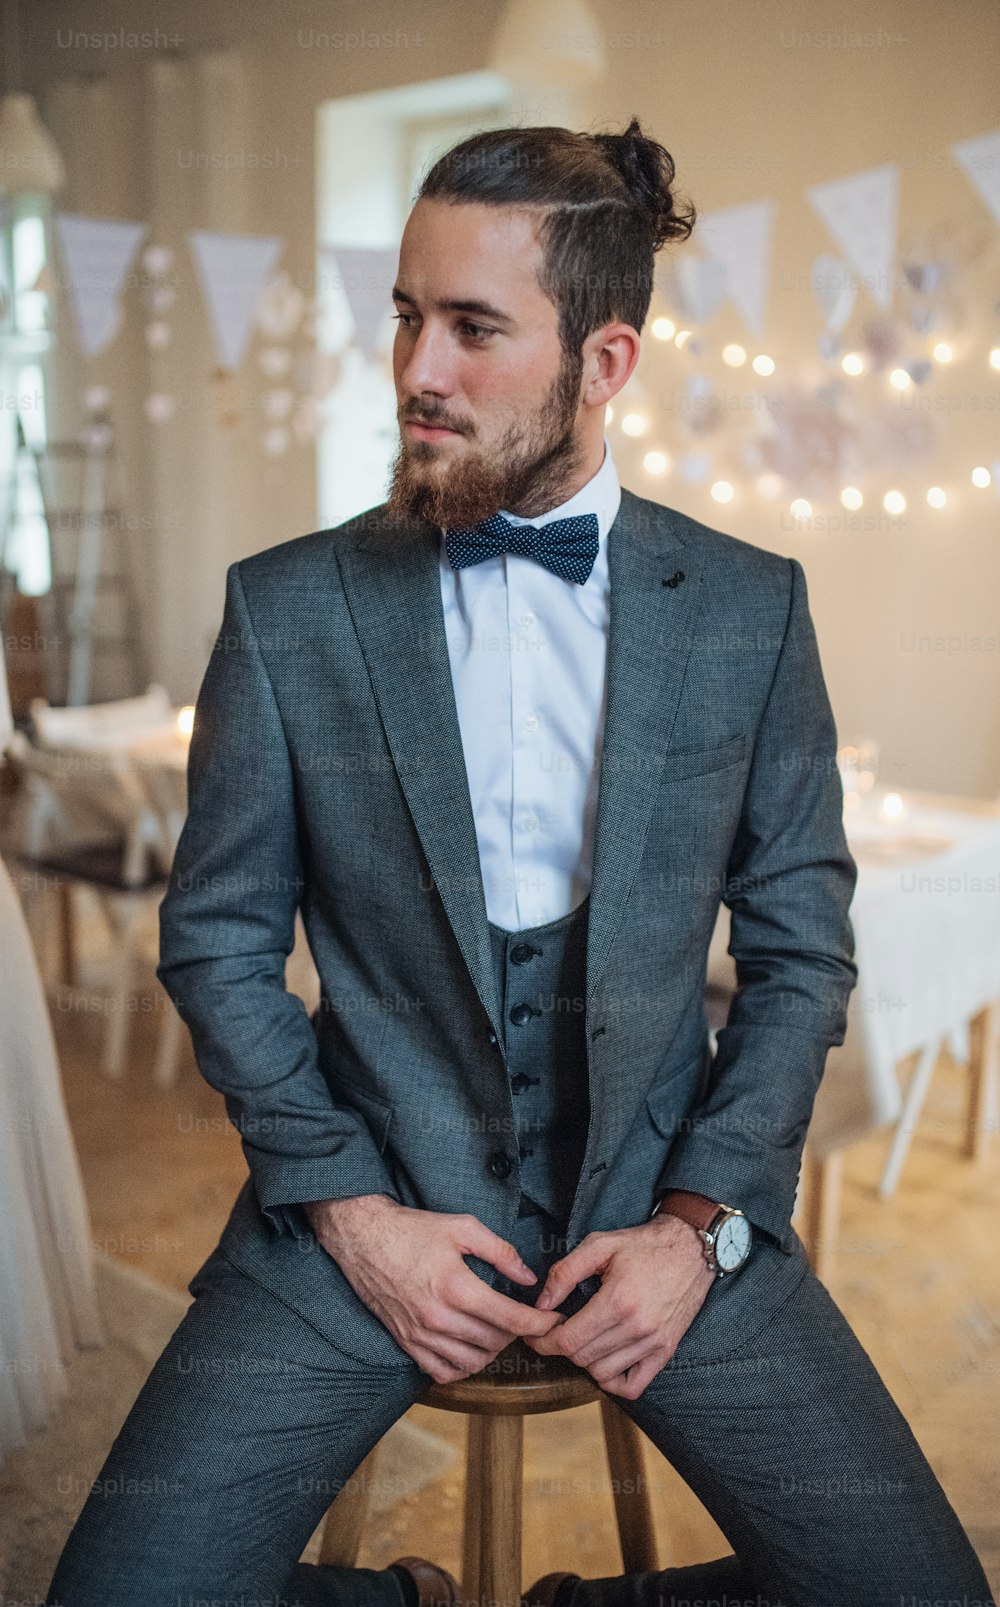 Un beau jeune homme hipster en costume formel assis sur un tabouret lors d’une fête à l’intérieur, détournant le regard.